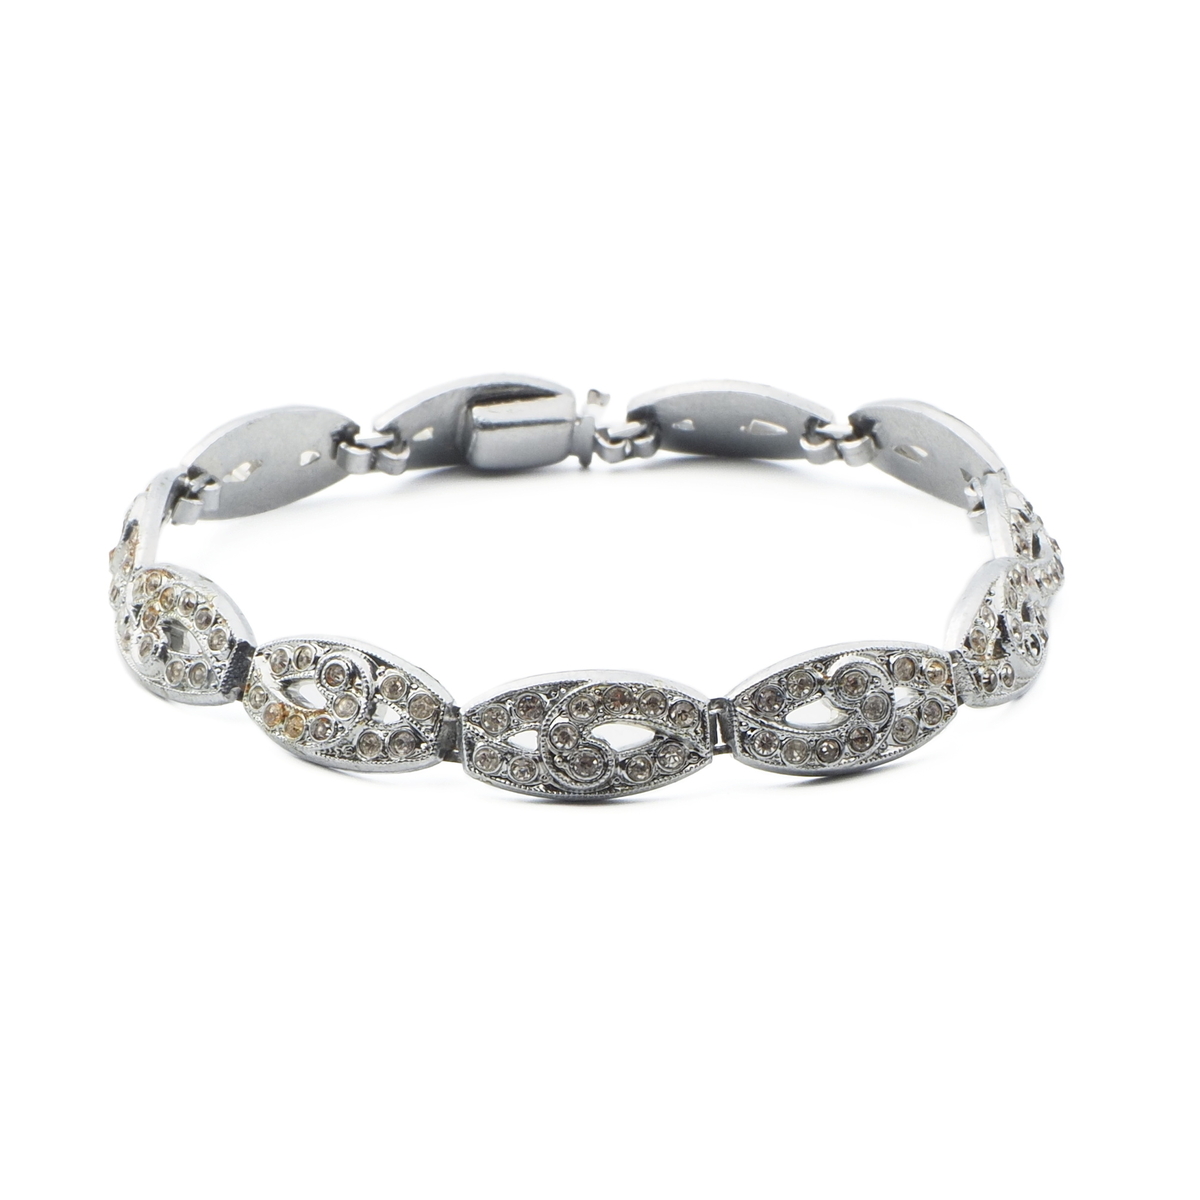 Czech vintage Art Deco silver plate bracelet clear glass rhinestones